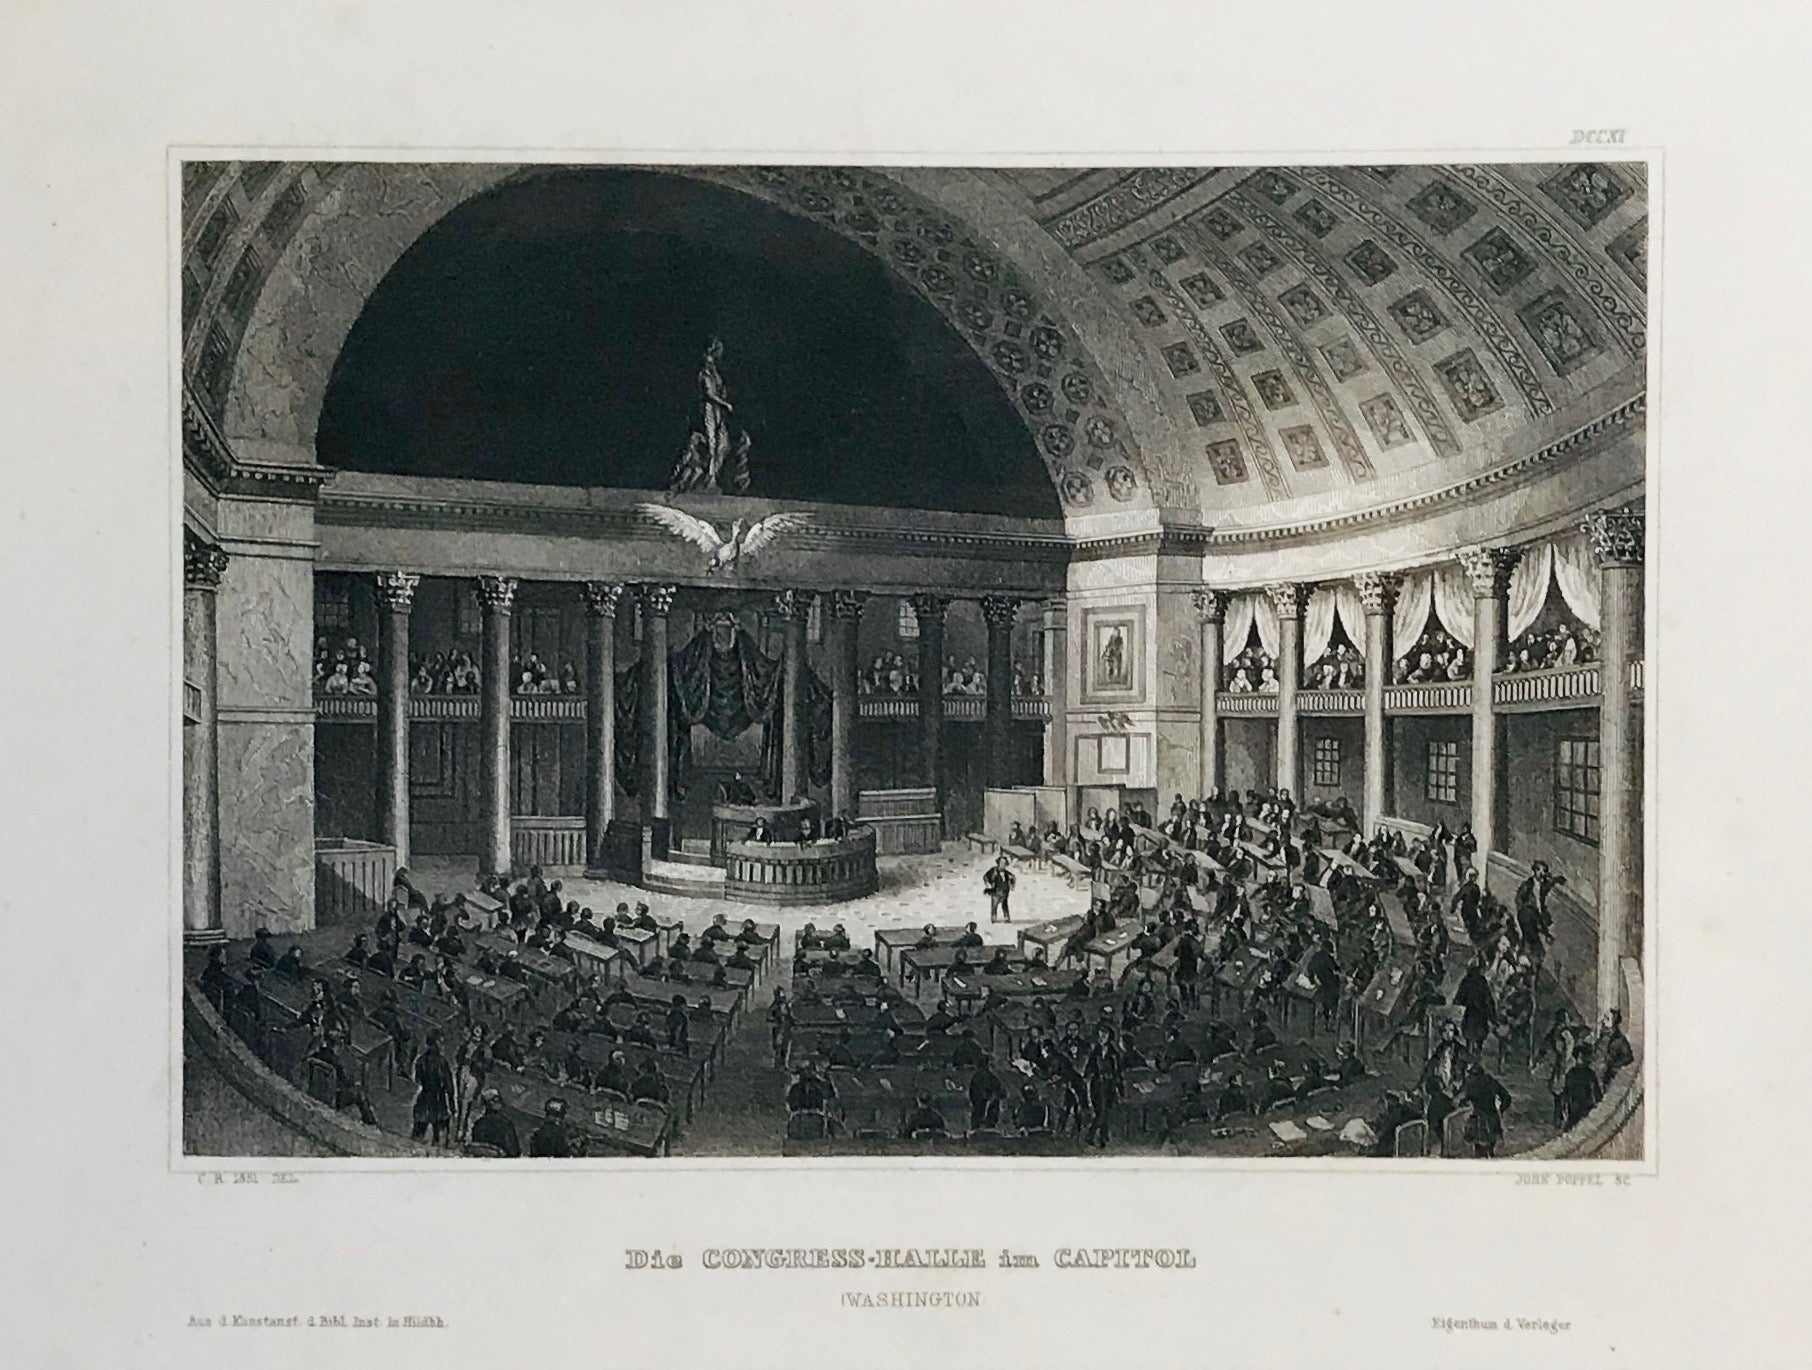 "Die Congress-Halle im Capitol" (Washington)  Steel engraving from Bibliograph. Institut in Hildburghausen, ca 1850. A few minor spots in margin.